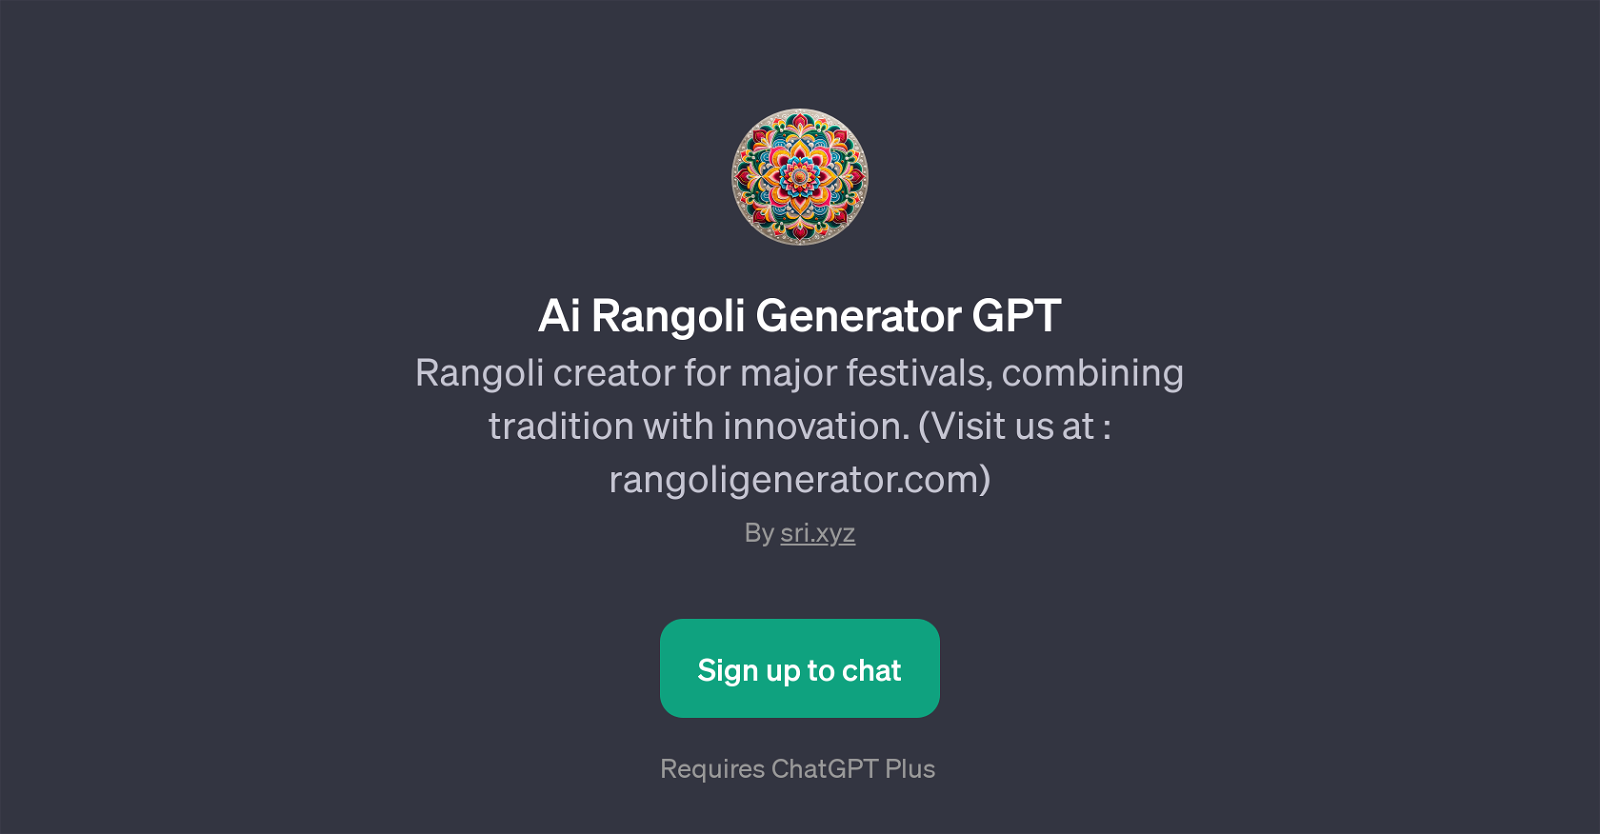 Ai Rangoli Generator GPT website